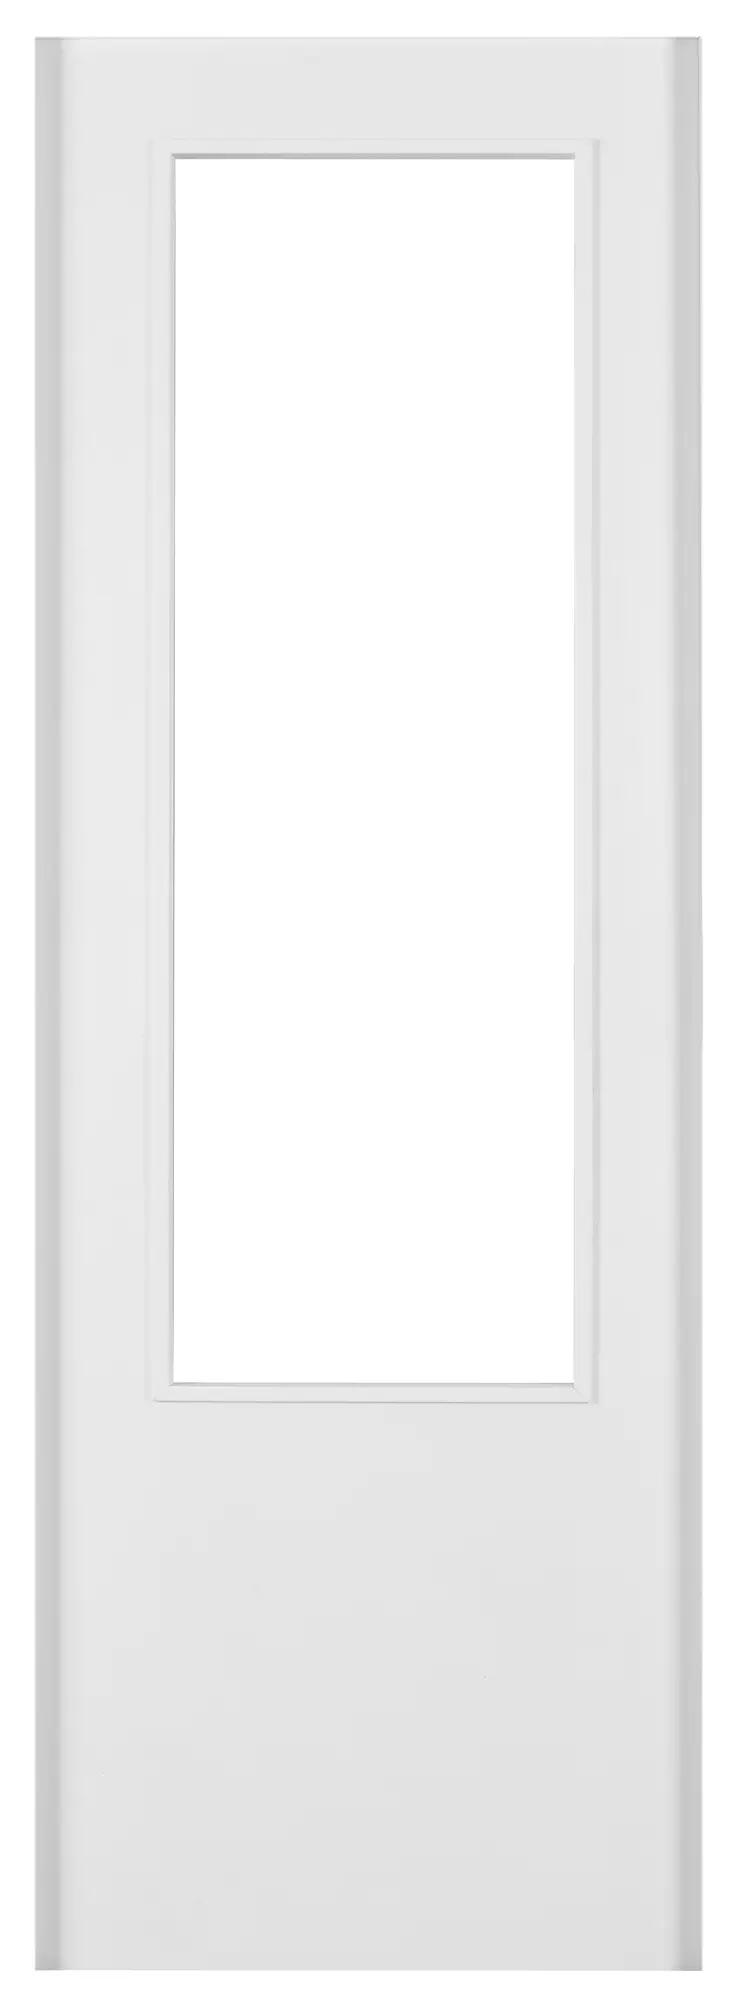 Puerta corredera con cristal lyon blanco de 82.5 cm